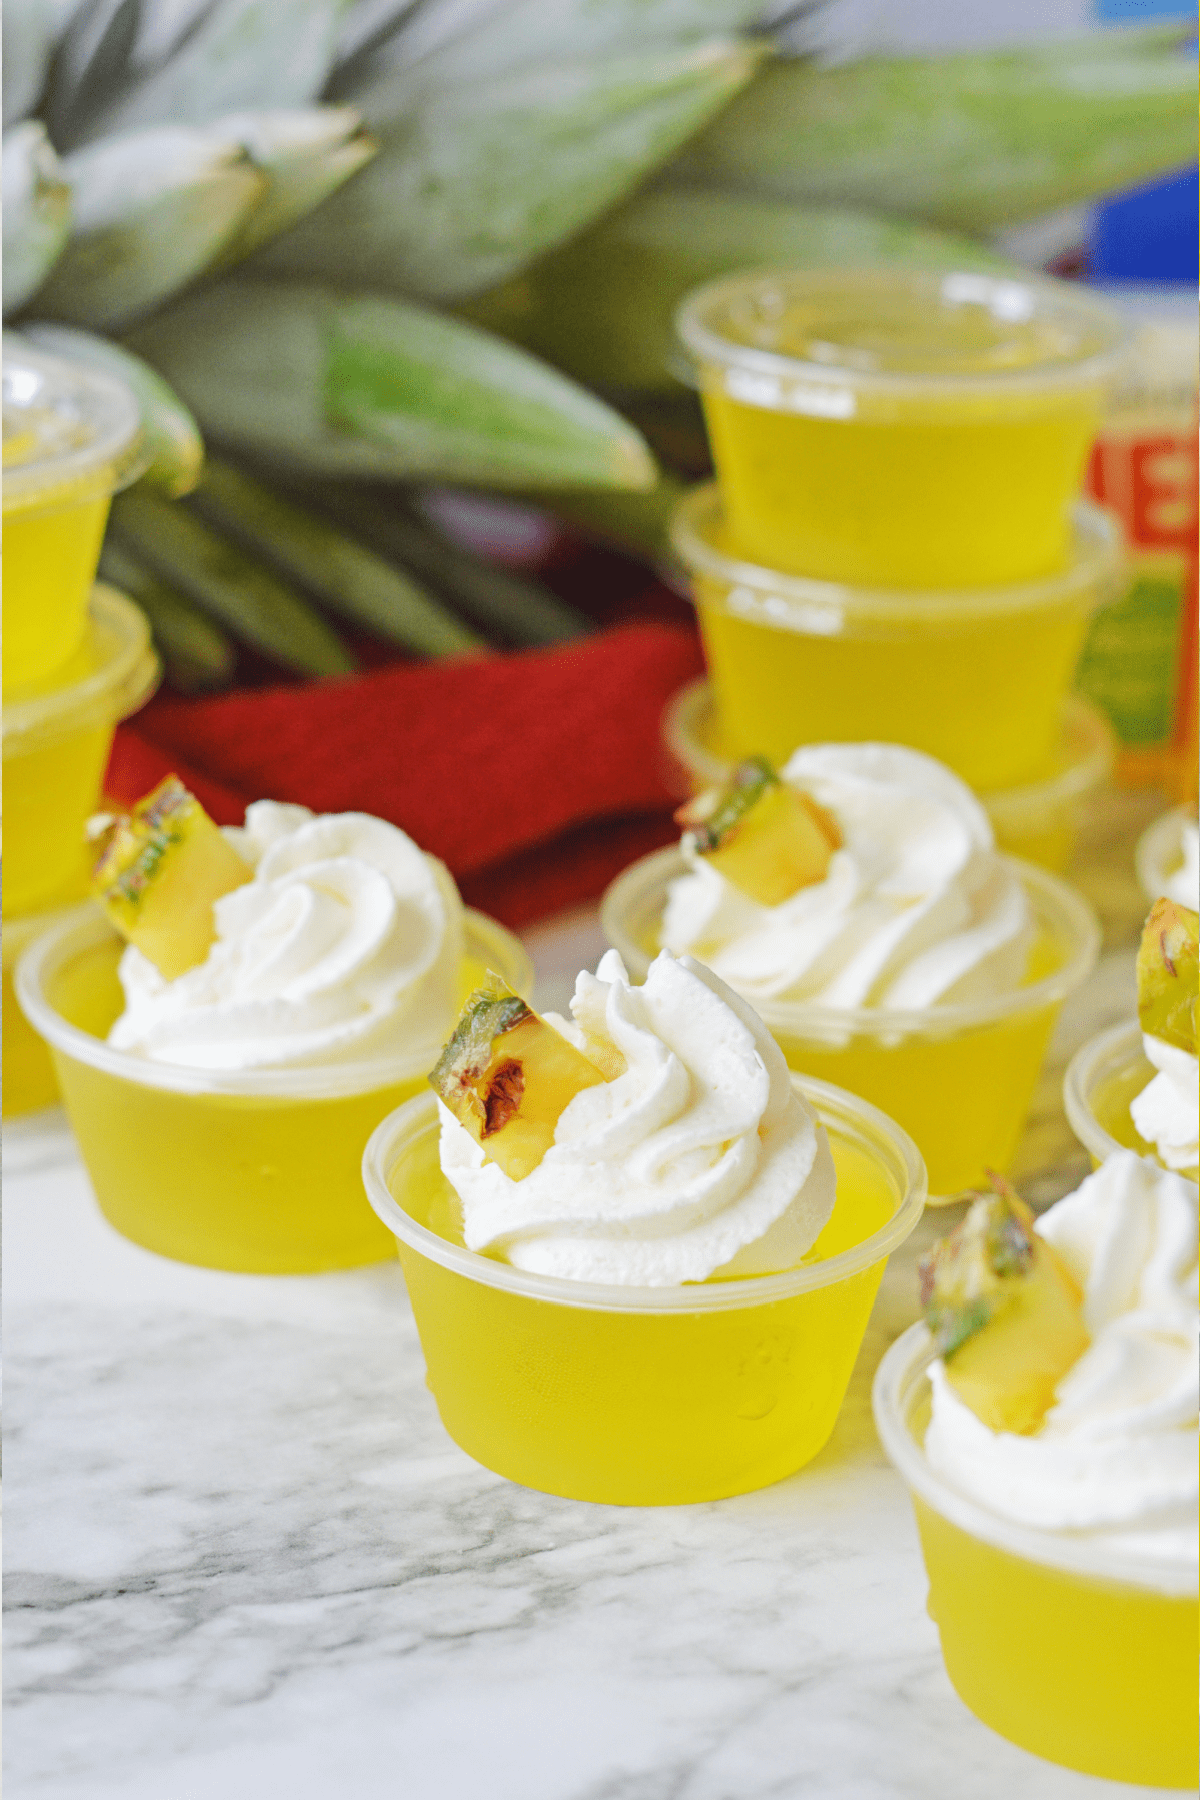 Pineapple jello shots in plastic jello cups